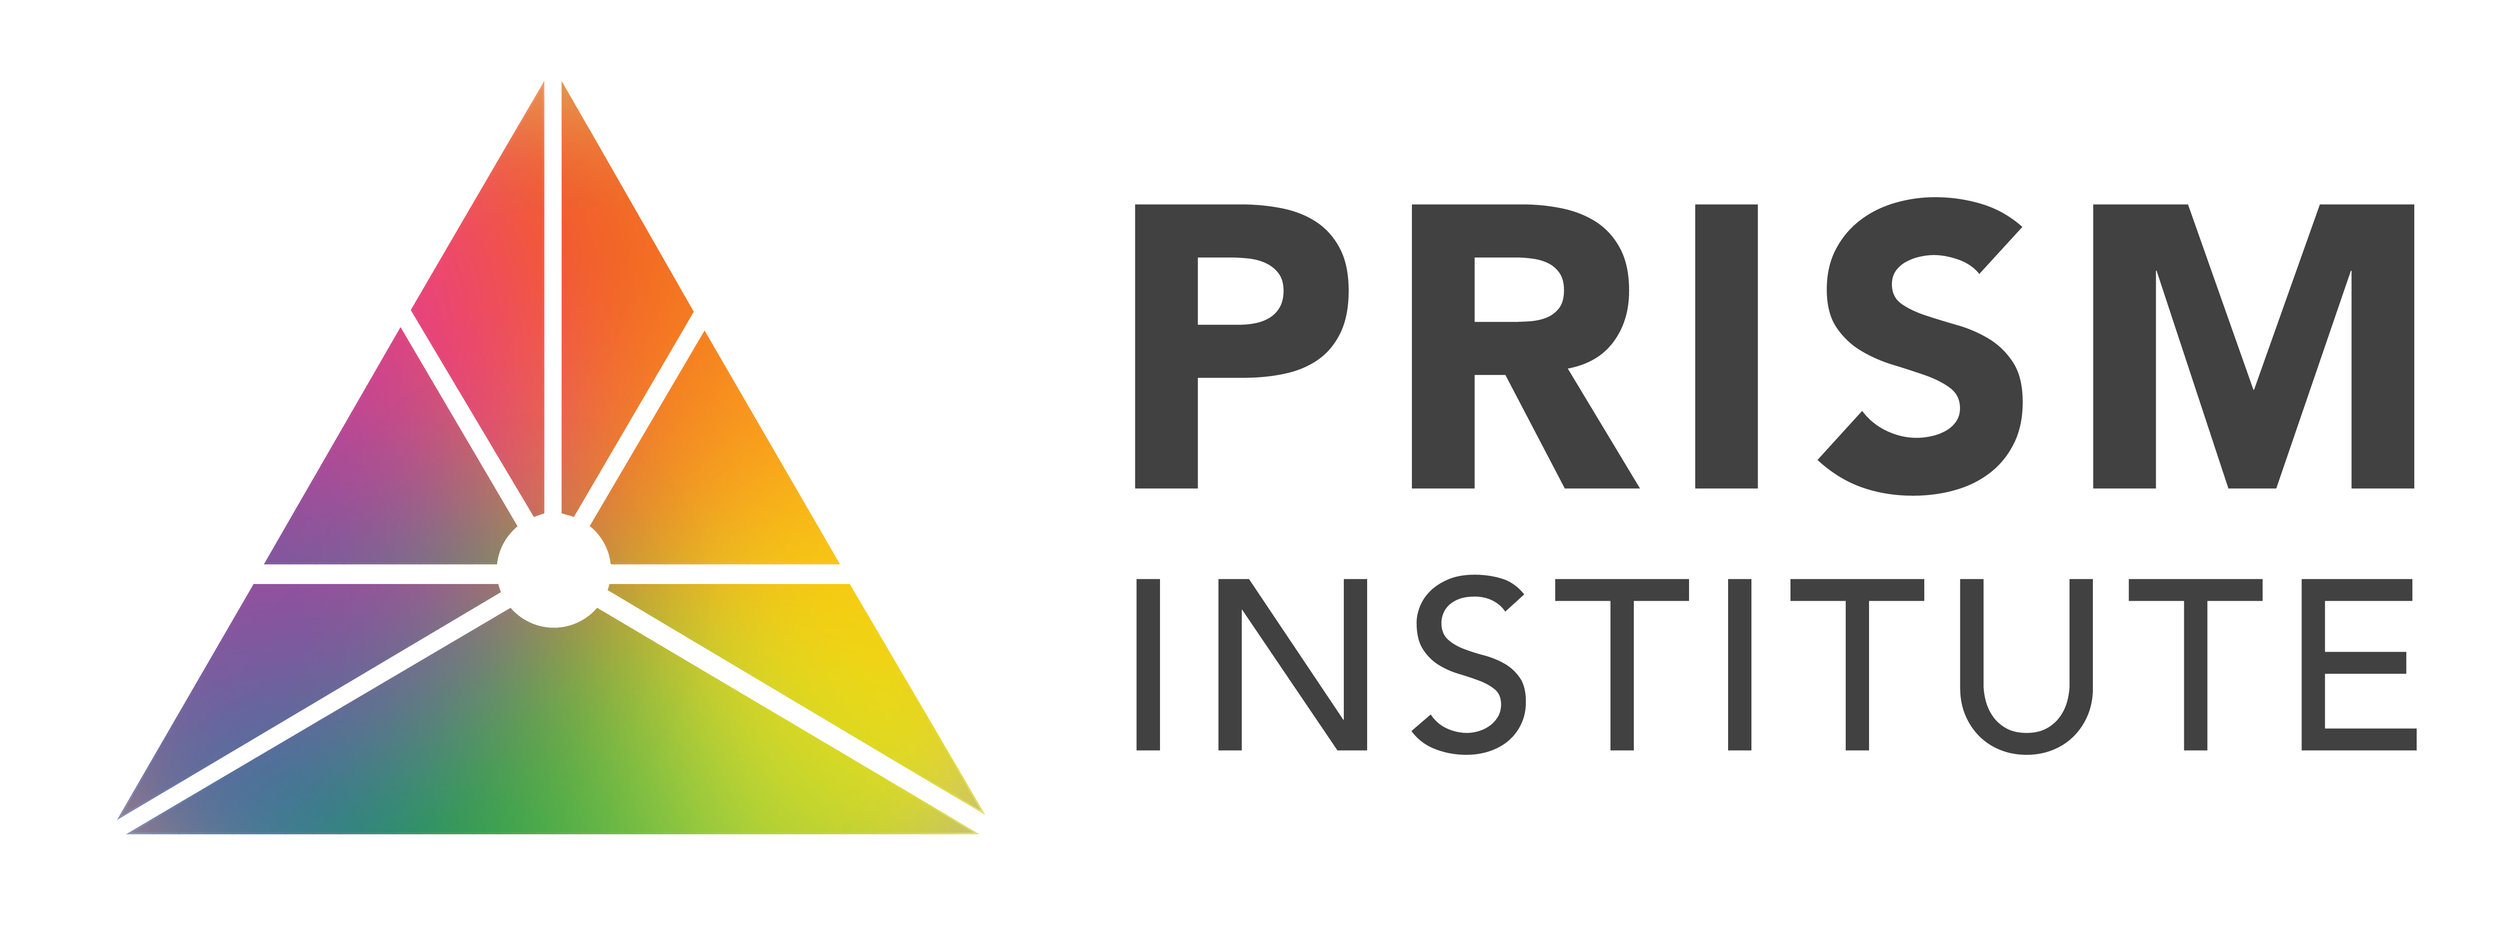 Prism Institute